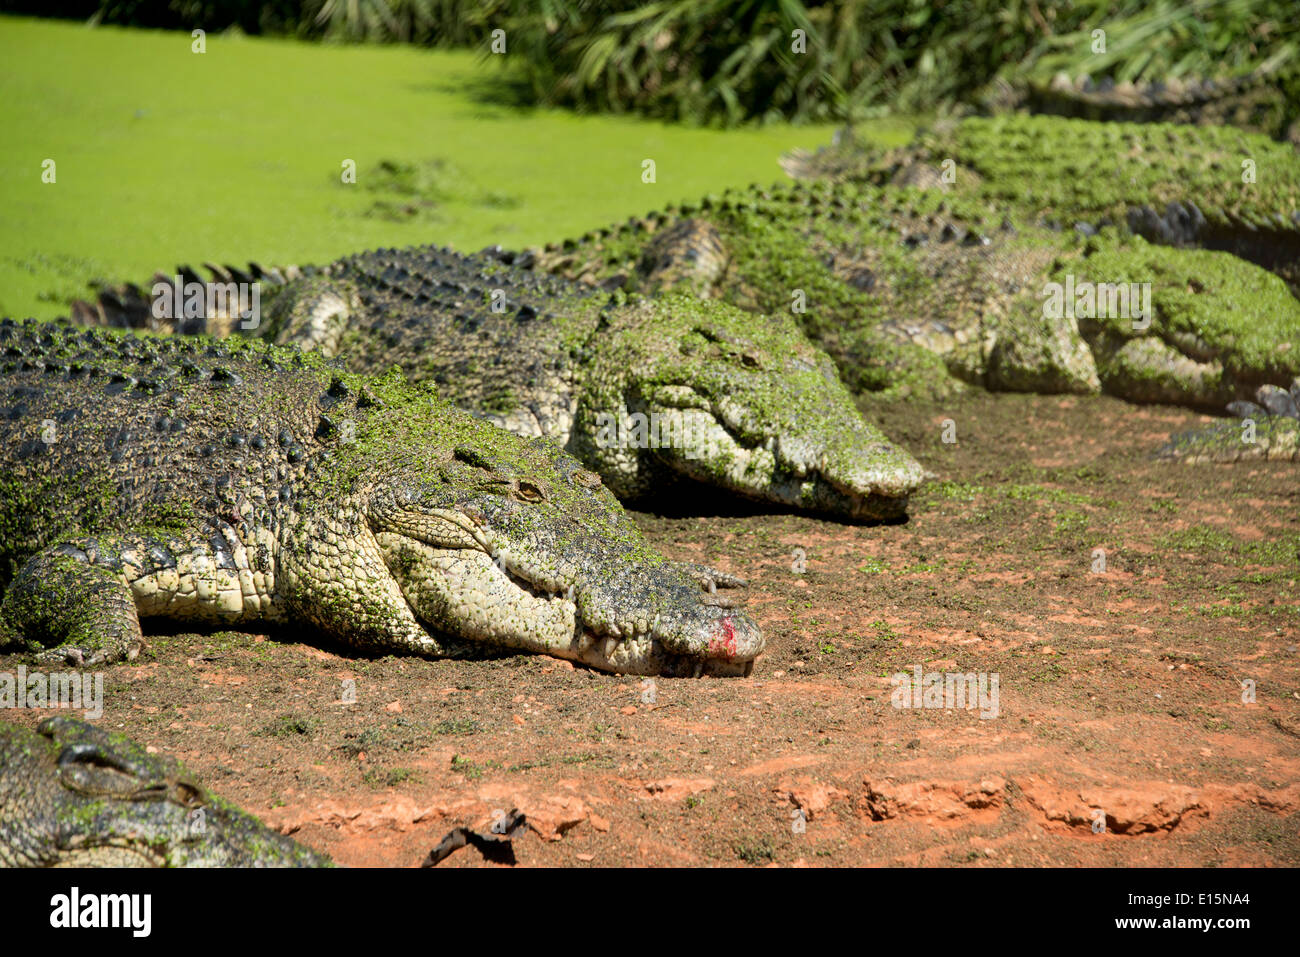 Australia, Australia occidentale, Broome. Malcolm Douglas Crocodile Park. Coccodrilli di acqua salata (Captive: Crocodylus porosus). Foto Stock